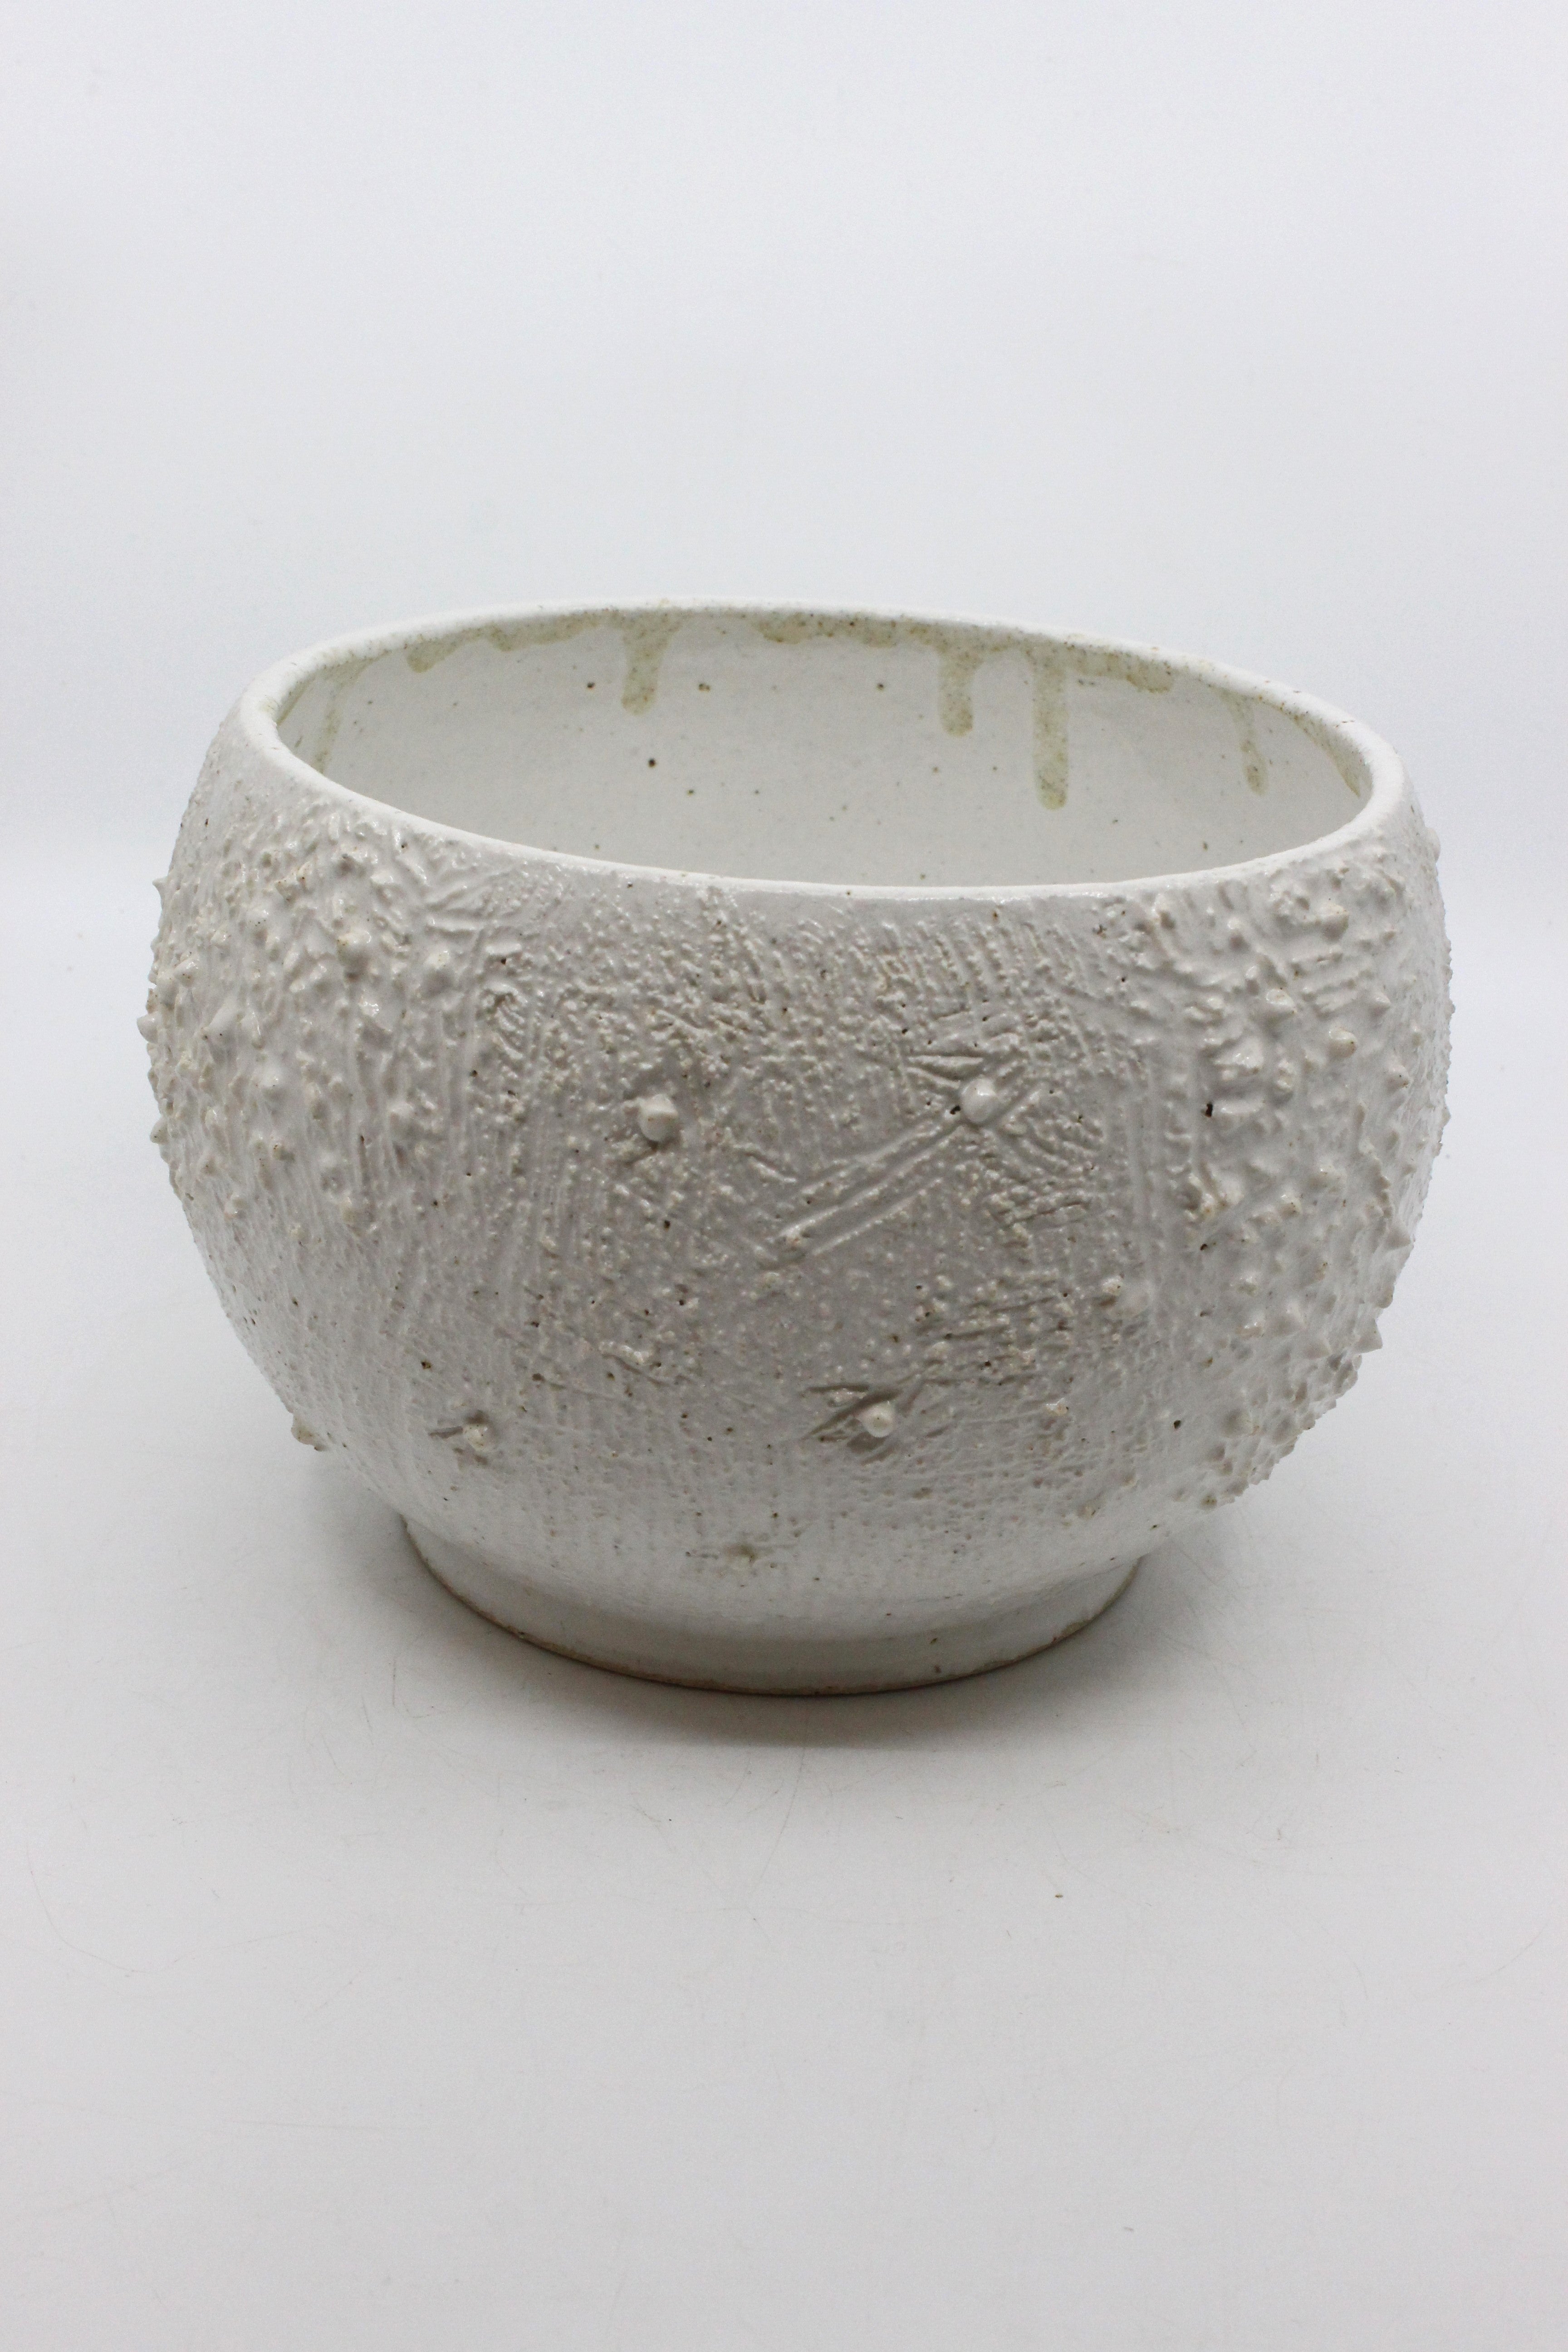 White Coral Vessel with Lid Ceramics Julia Bramich 